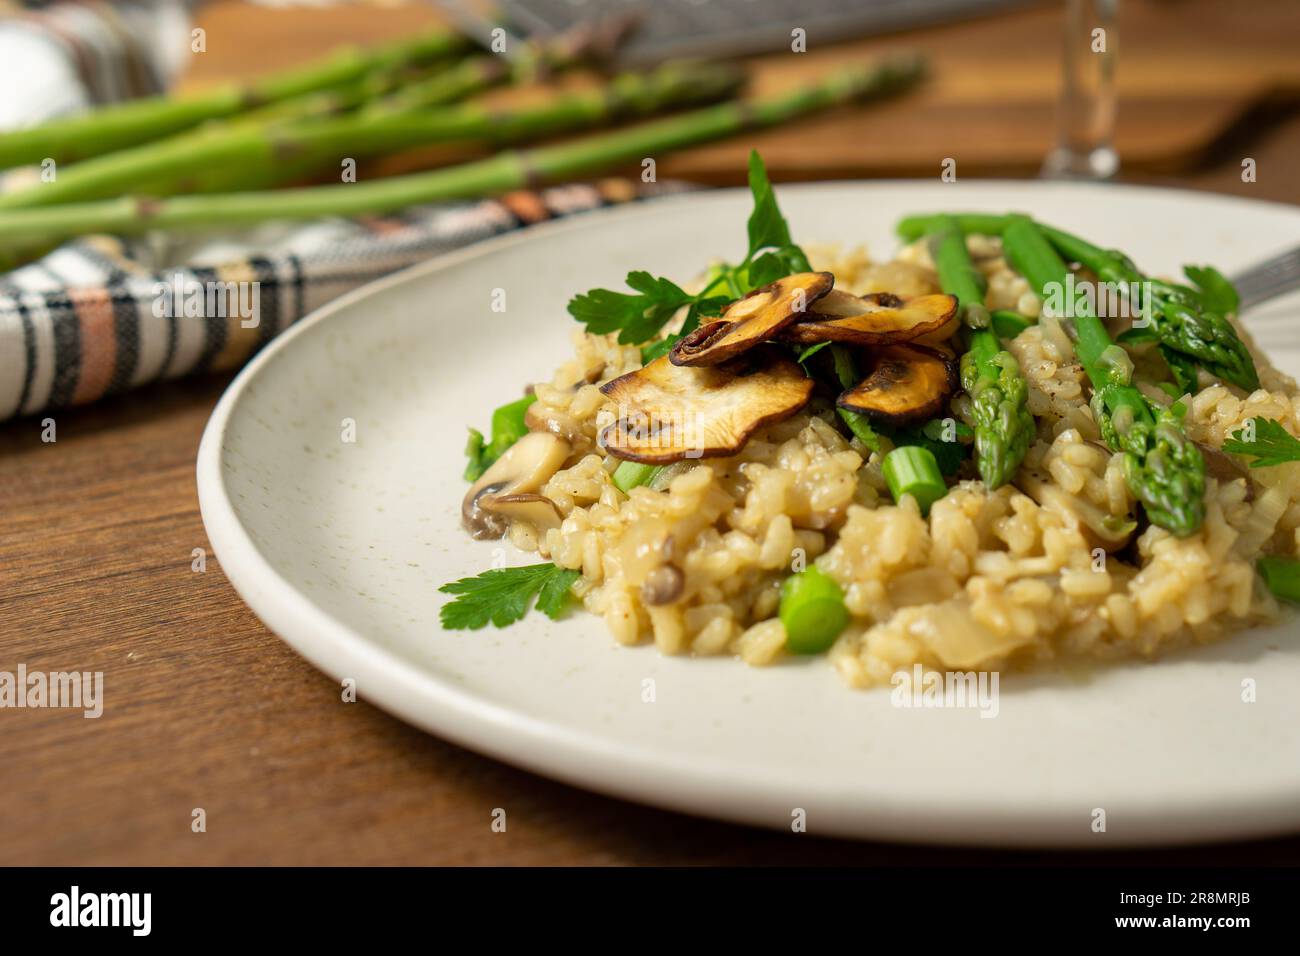 45º vue d'un risotto aux champignons et aux asperges servi sur un plat blanc avec une fourchette, un verre de vin blanc et un râpe et des asperges sur une planche à découper, Banque D'Images